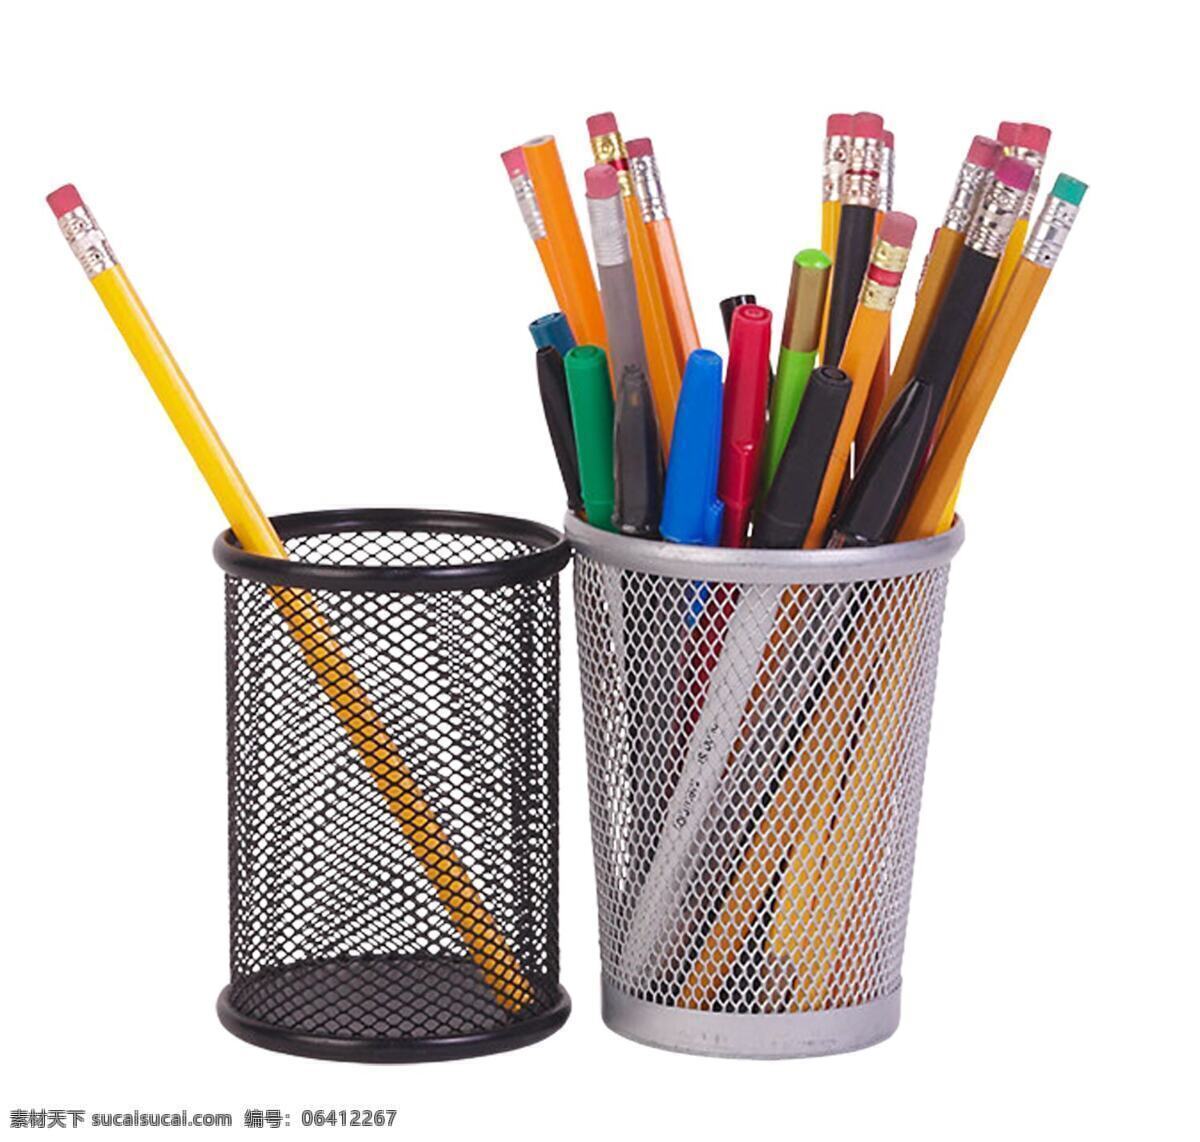 笔筒 彩色 铅笔 笔 绘画笔 彩色铅笔 文具 学习用品 办公学习 生活百科